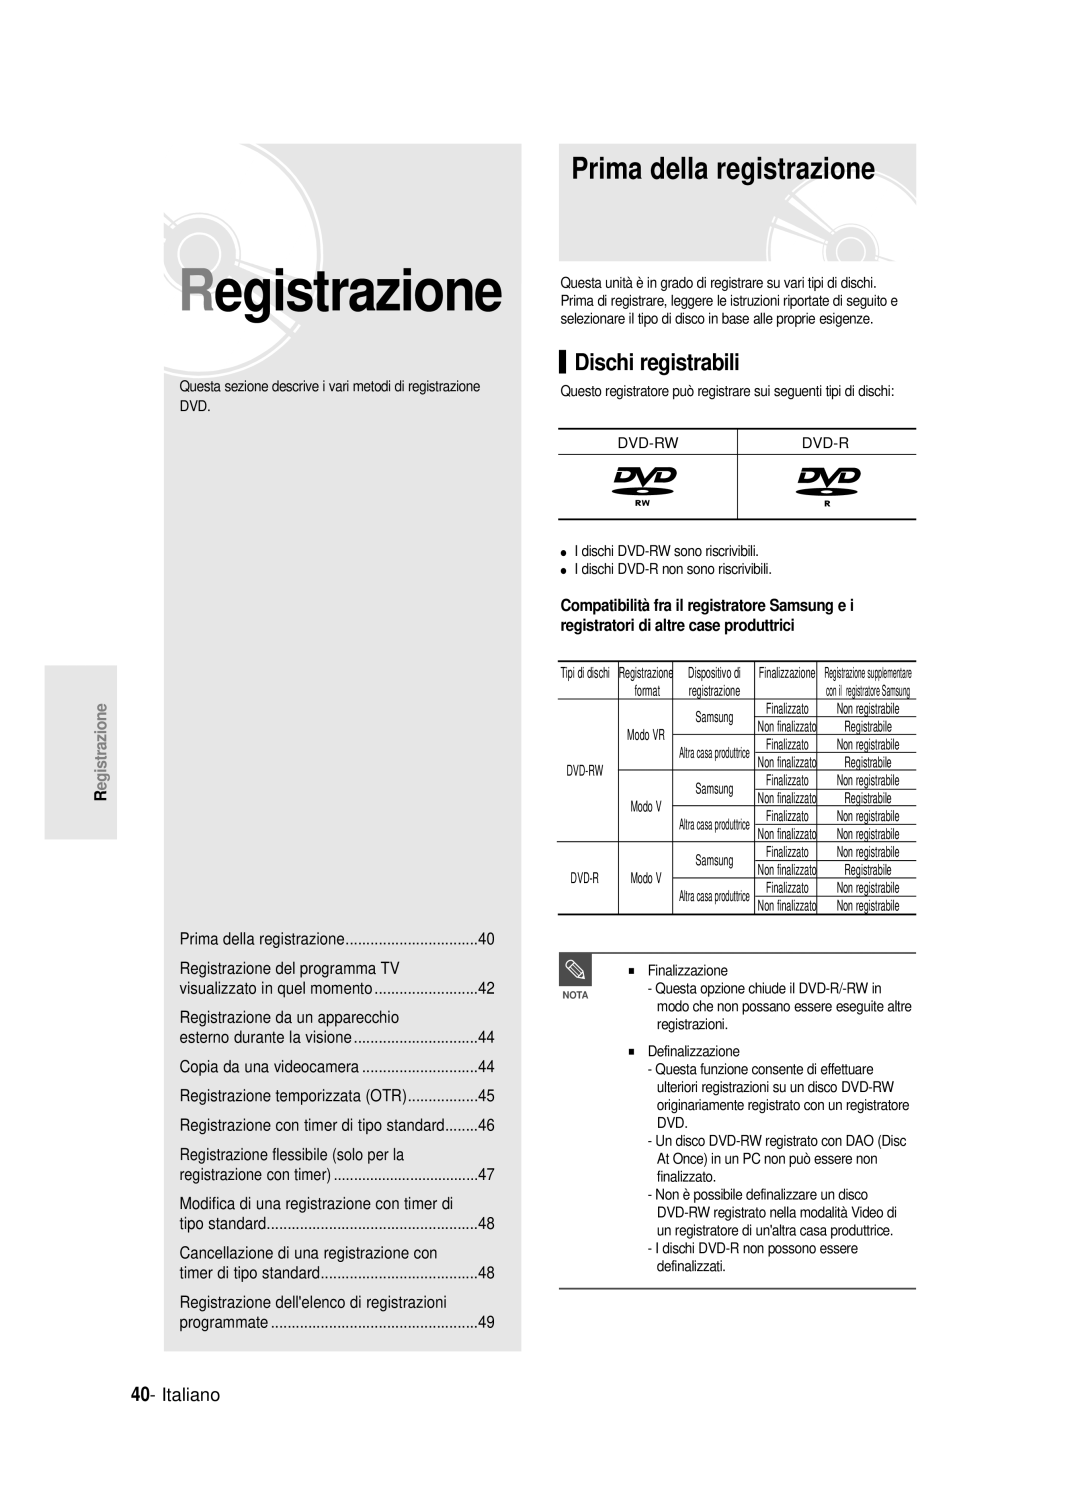 Samsung DVD-R121E/XEG, DVD-R120/AFS, DVD-R120/XET Registrazione, Prima della registrazione, Dischi registrabili, Italiano 